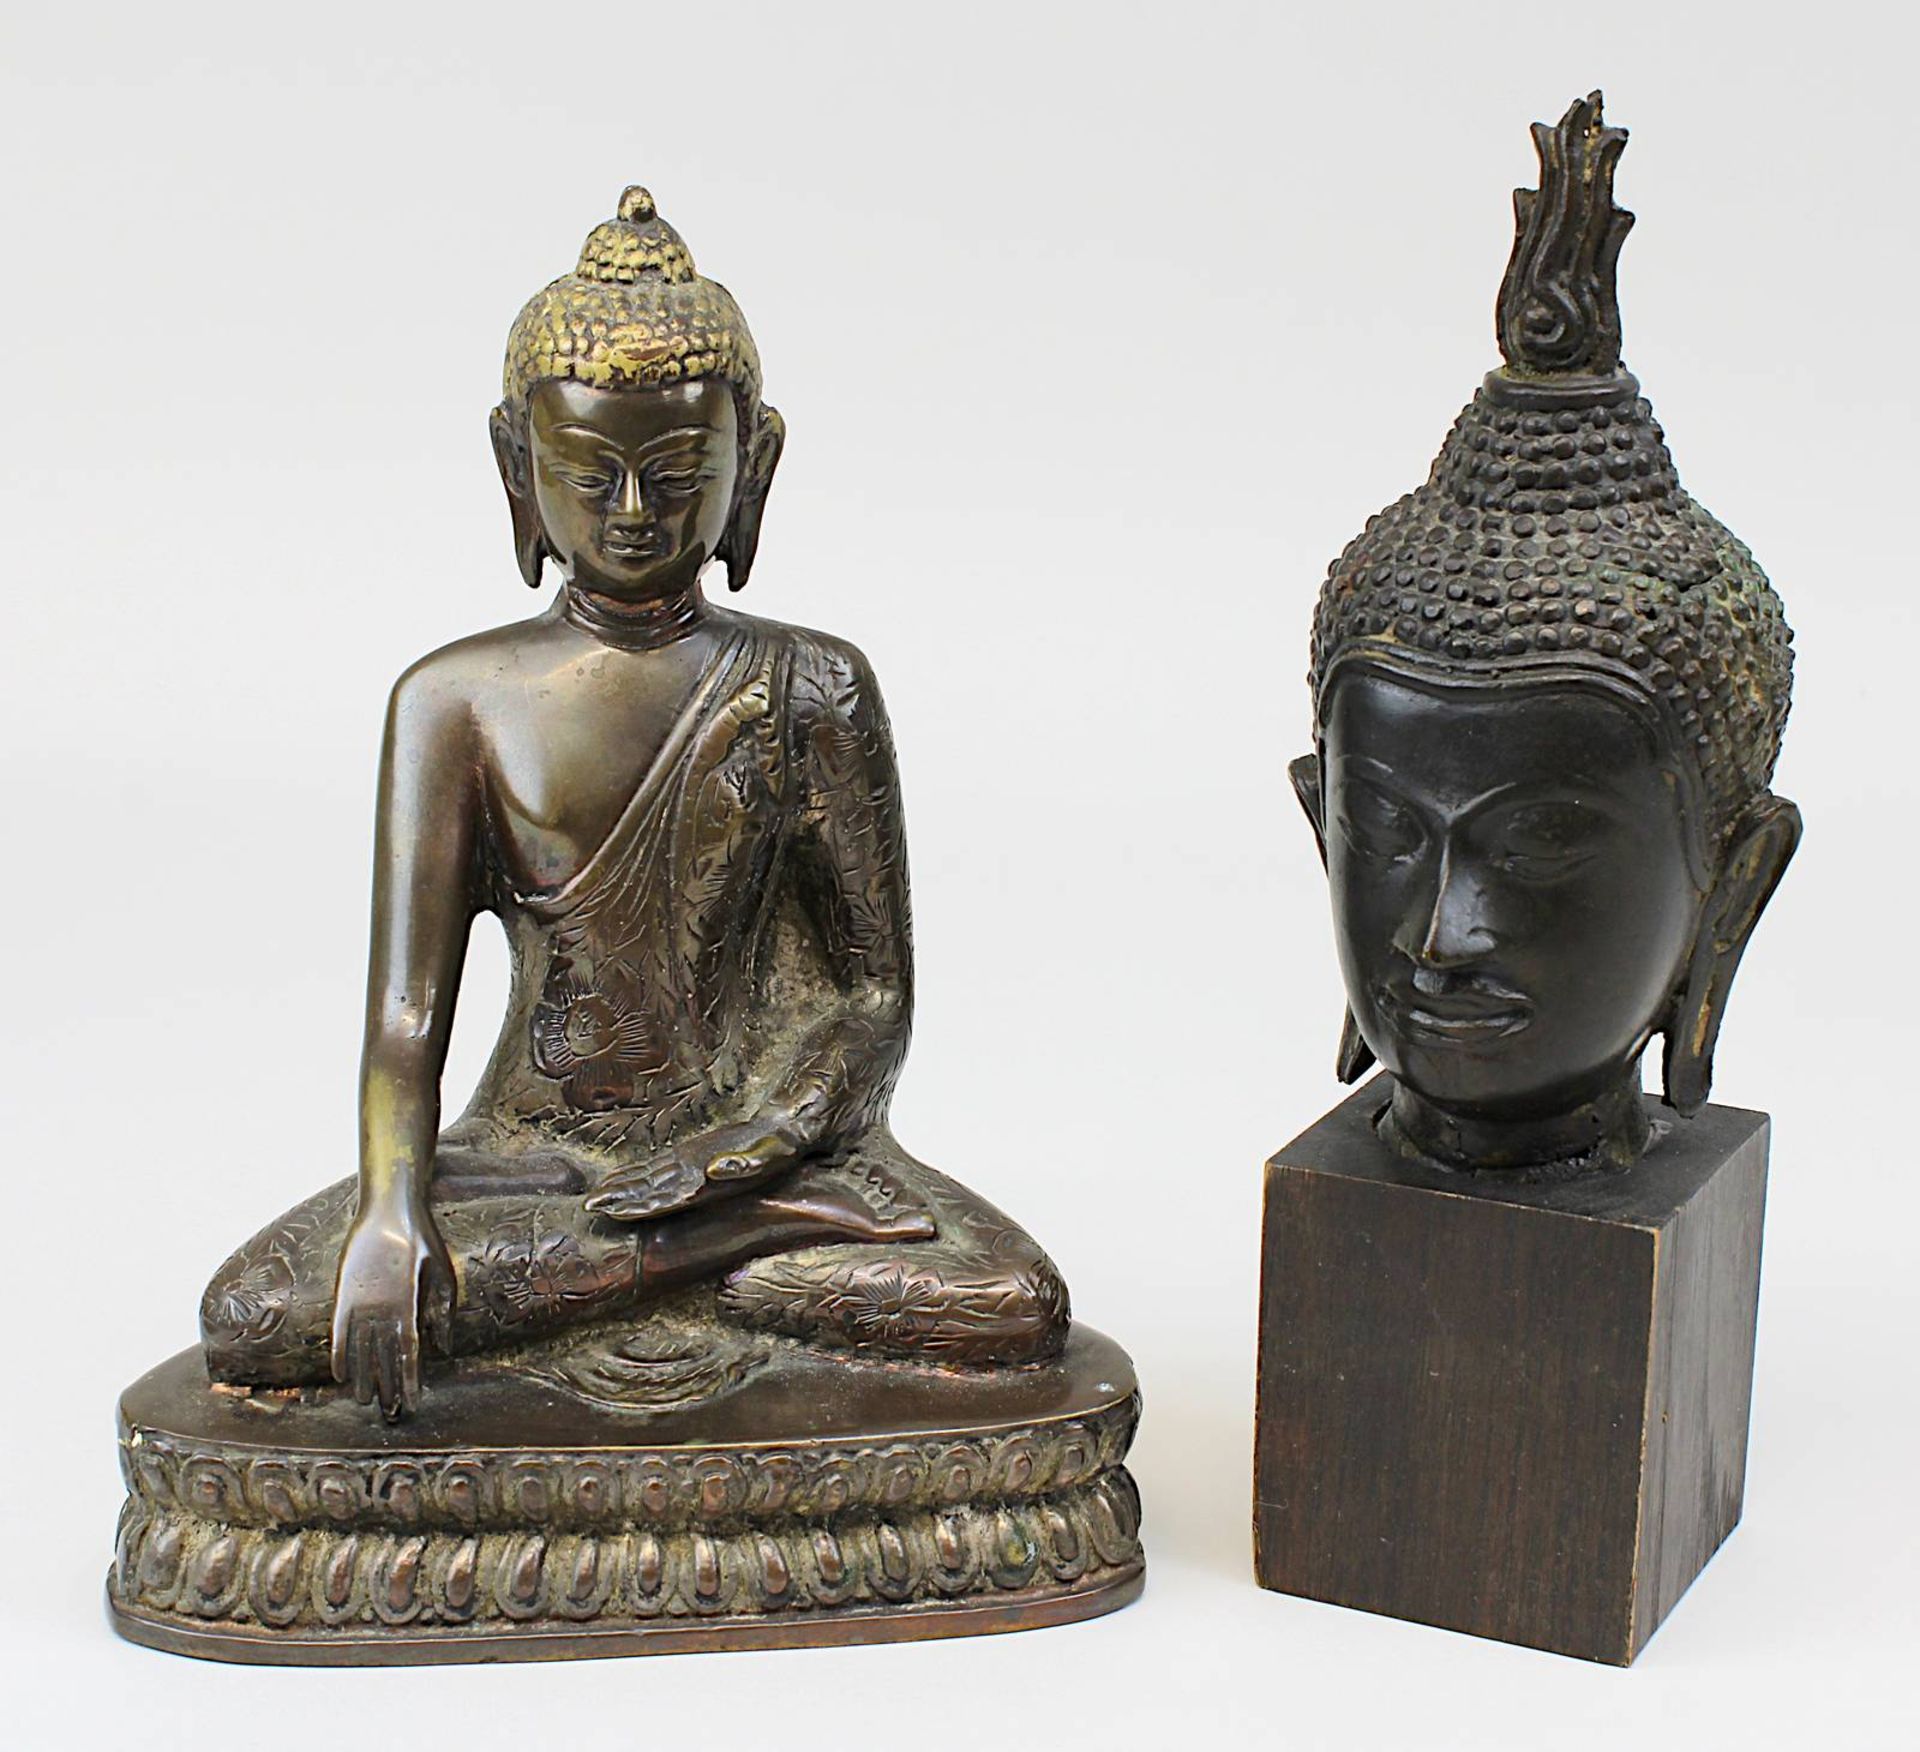 Sitzender Buddha und Kopf einer Buddha-Figur, Bronze, Thailand: Kopf des Buddha, Thailand wohl 19.